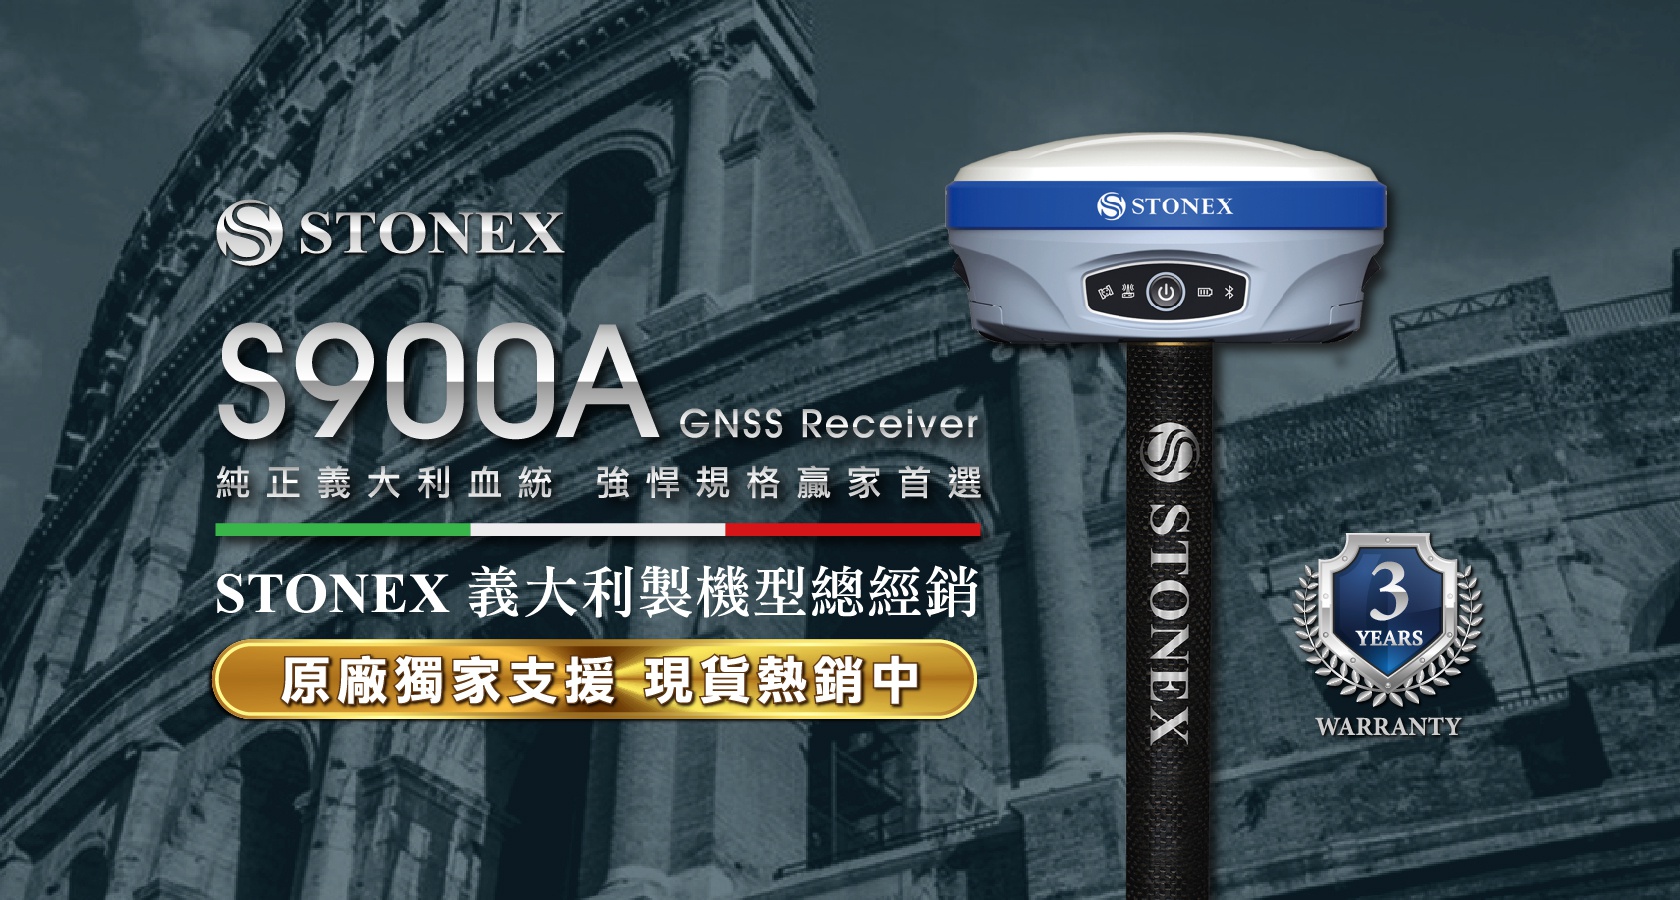 STONEX S900A 義大利製GNSS衛星接收器